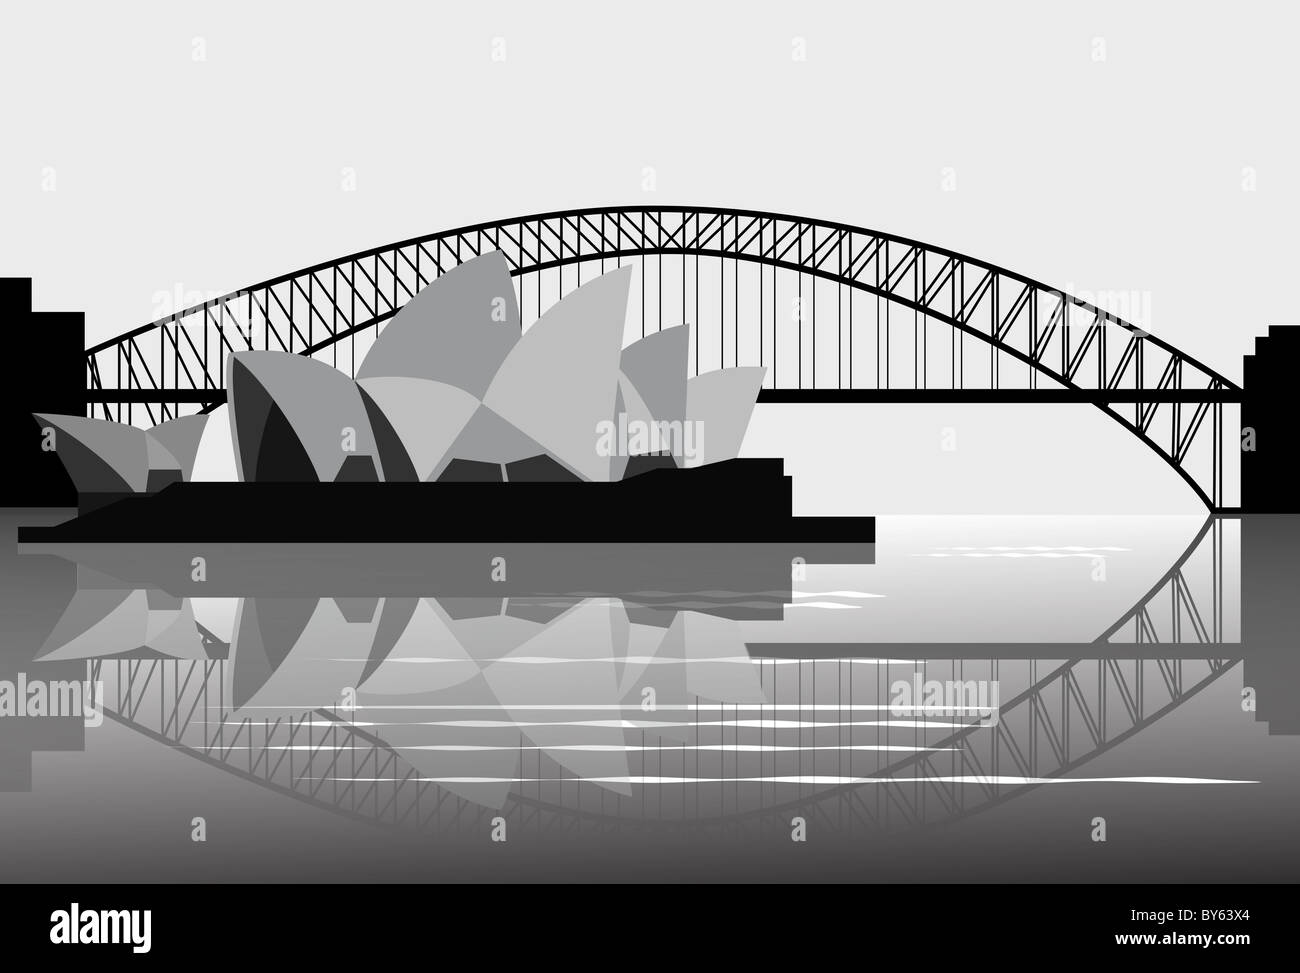 Illustration of the Sydney Harbor Bridge and Sydney Opera House Stock Photo